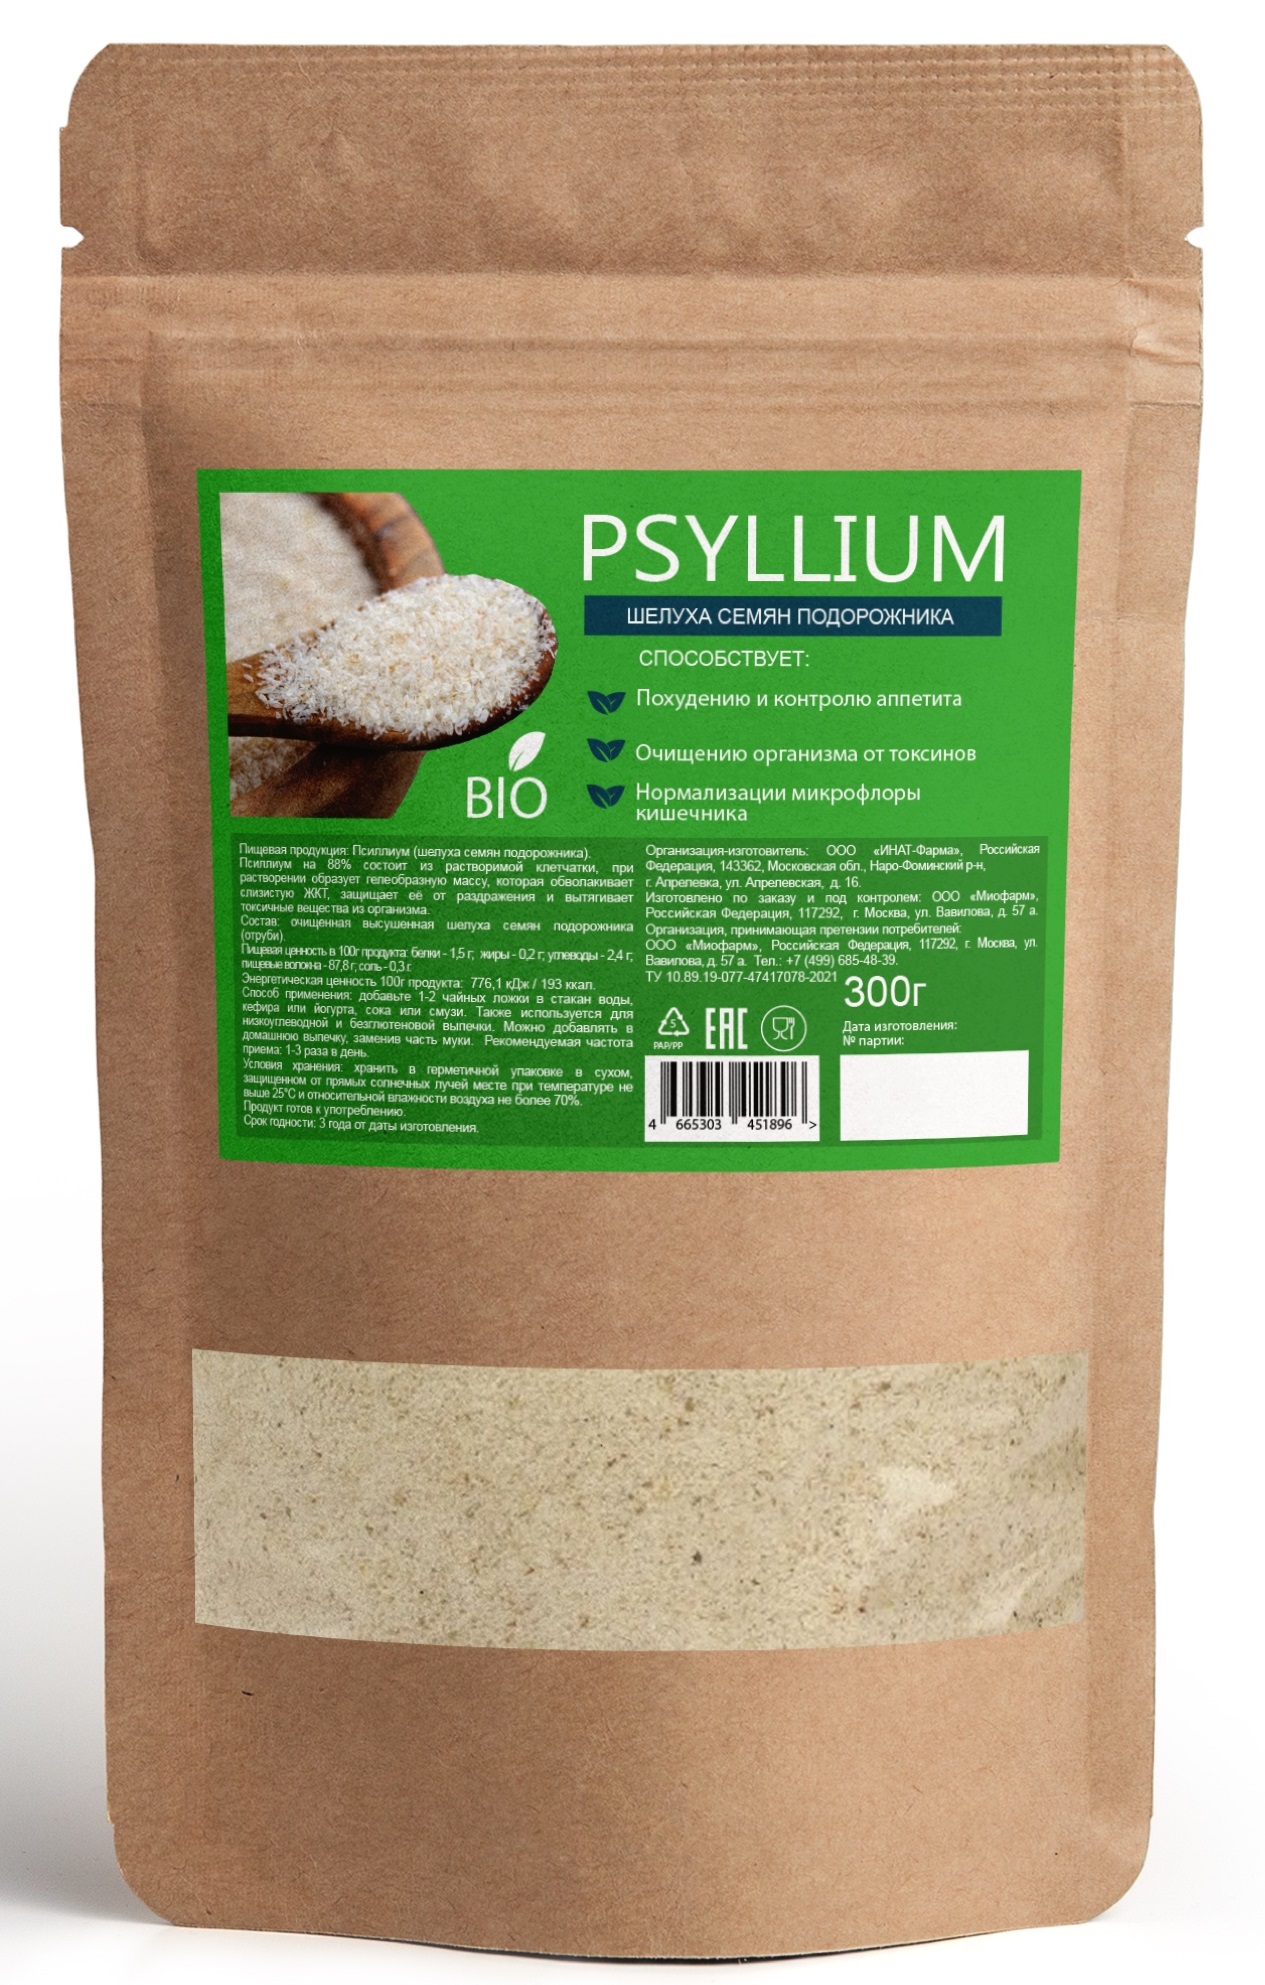 Псиллиум 300г. (шелуха семян подорожника) PREMIUM, клетчатка для похудения